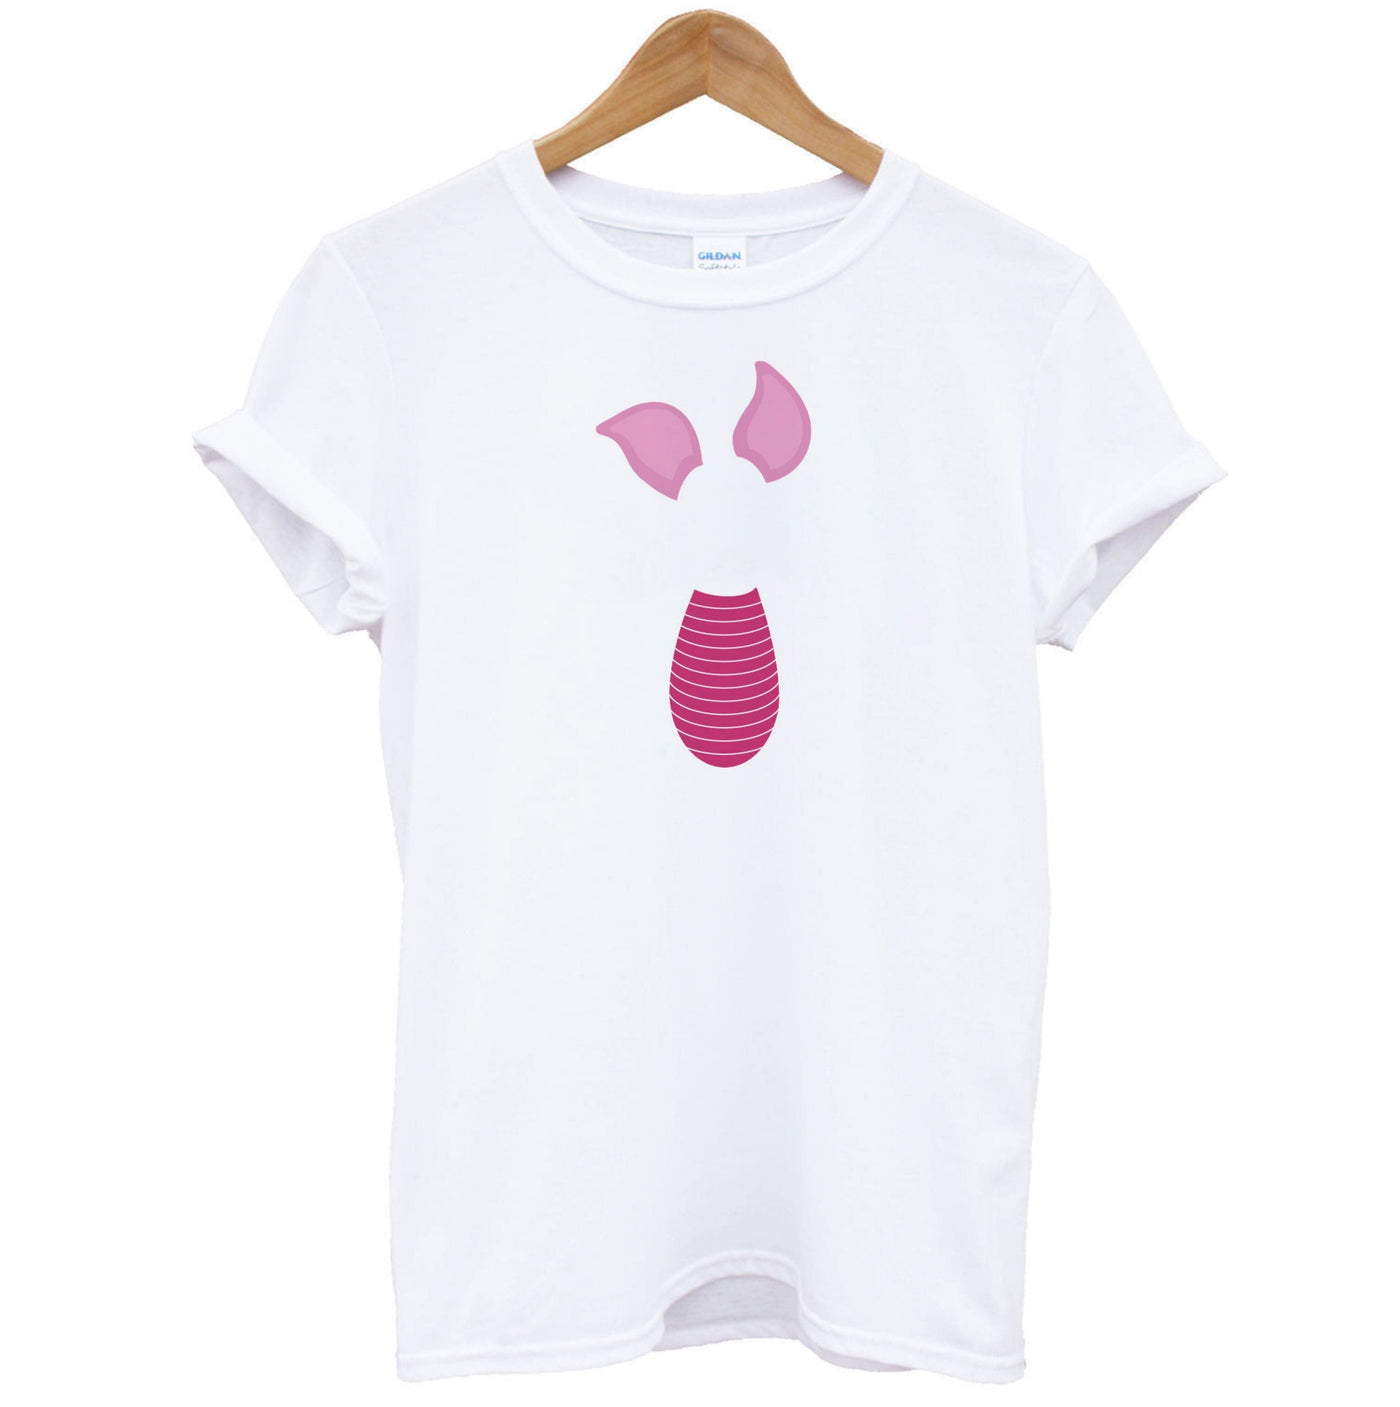 Faceless Piglet - Disney T-Shirt